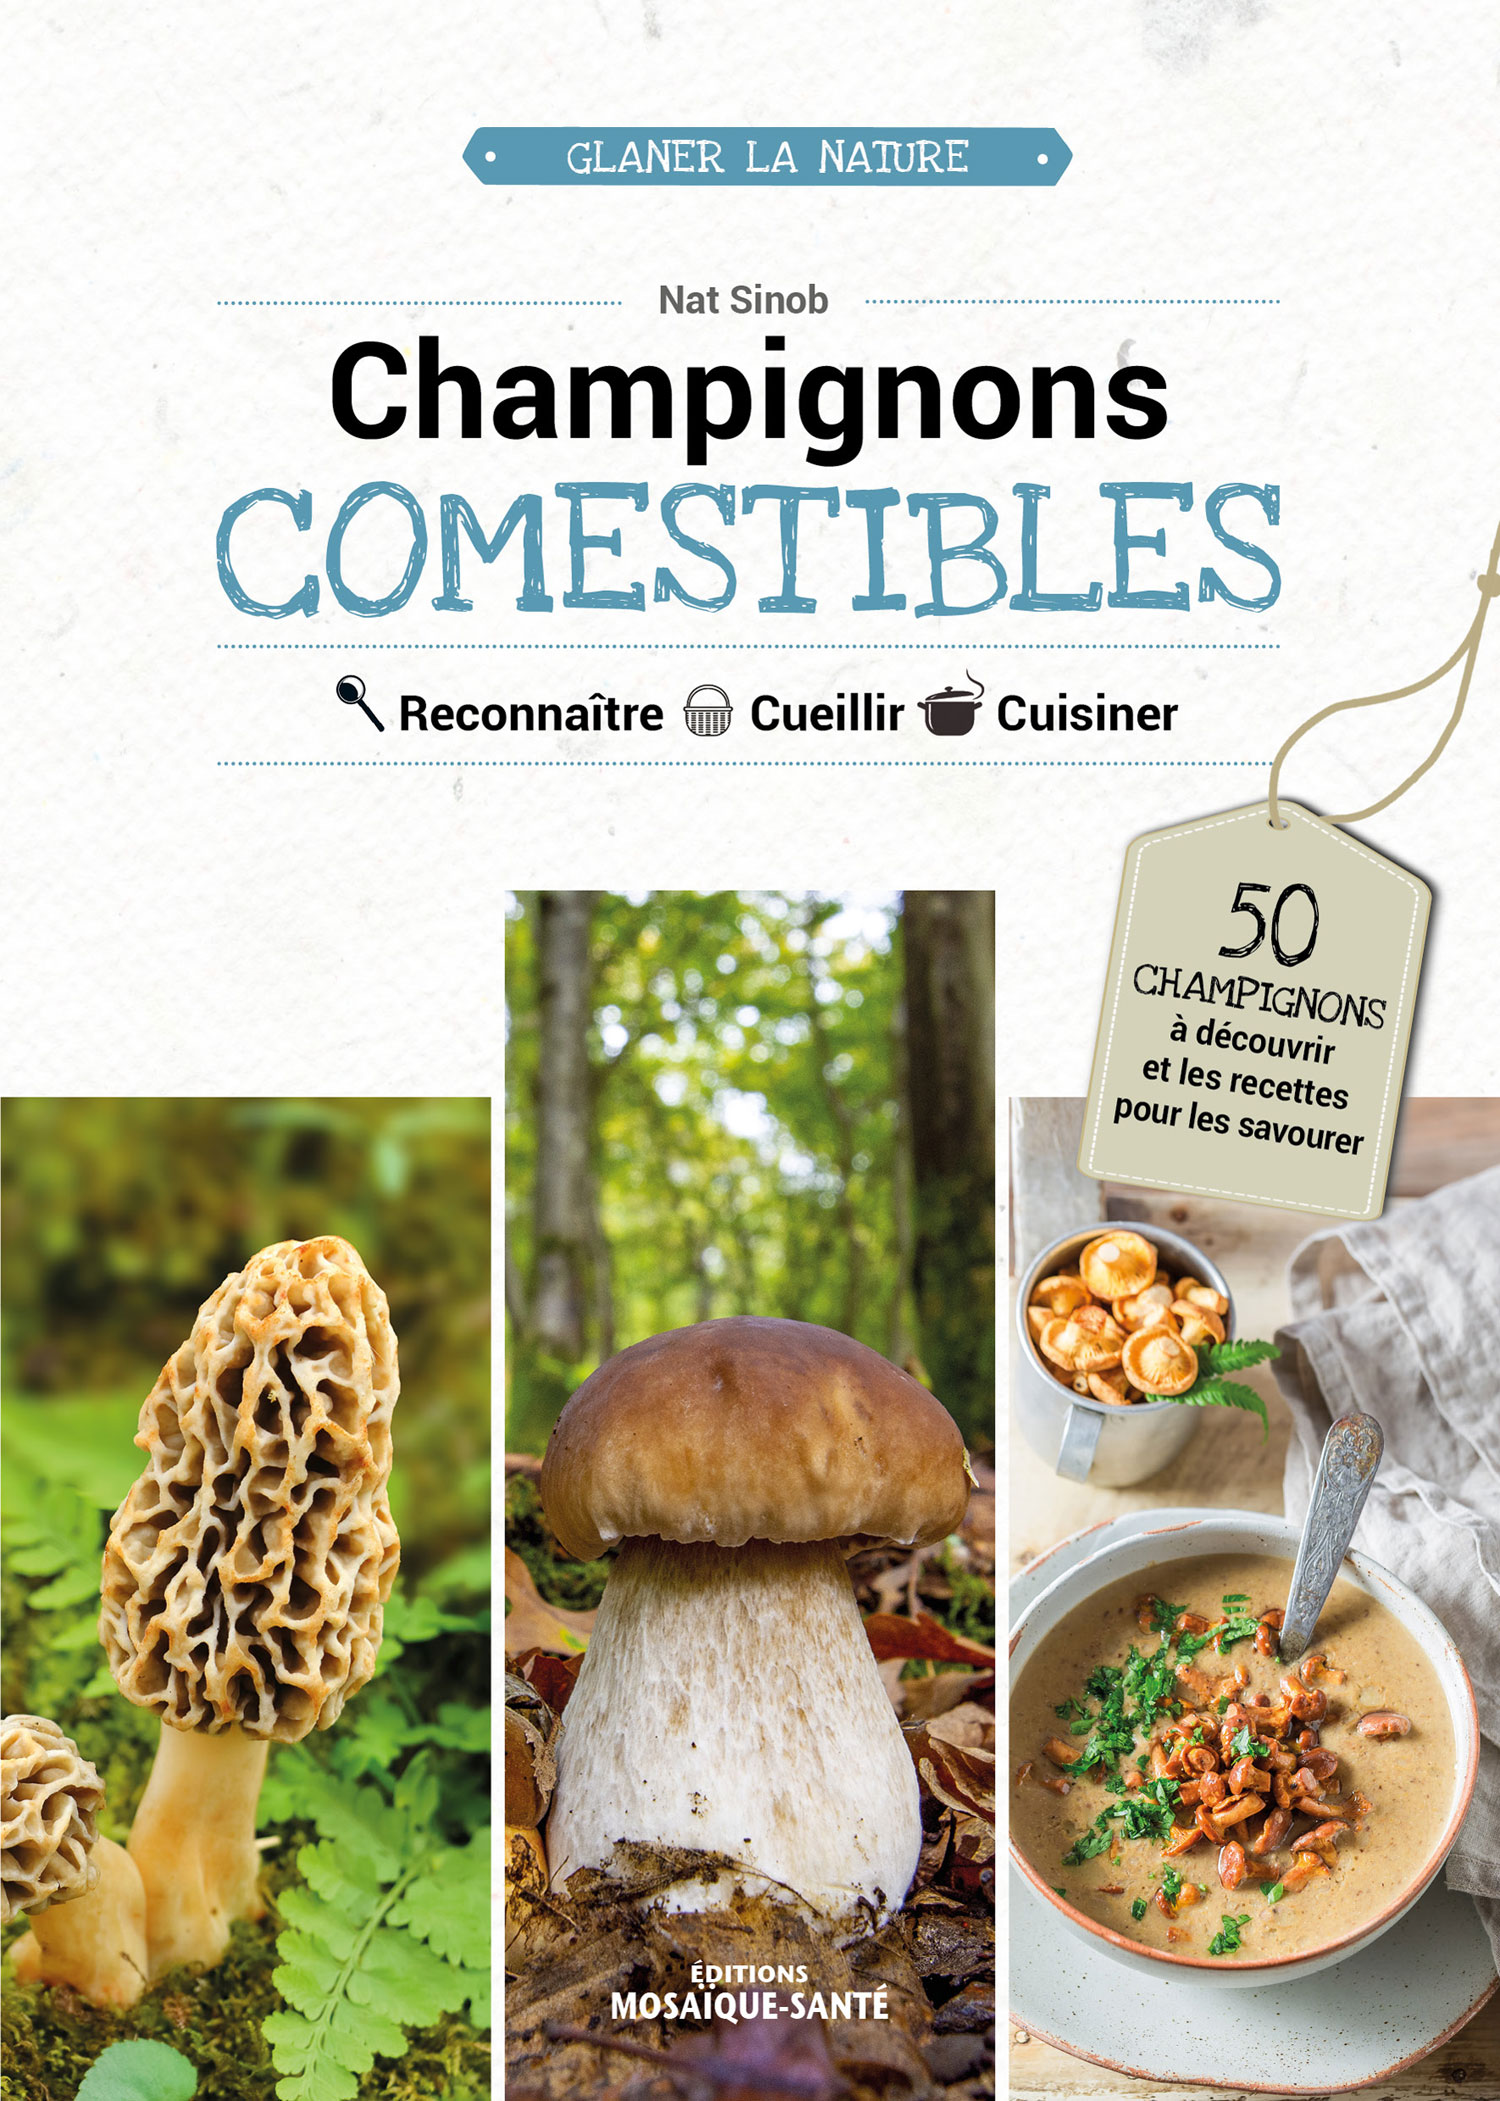 Champignons COMESTIBLES Reconnaître  Cueillir  Cuisiner  50 champignons comestibles à découvrir et les recettes pour les savourer !